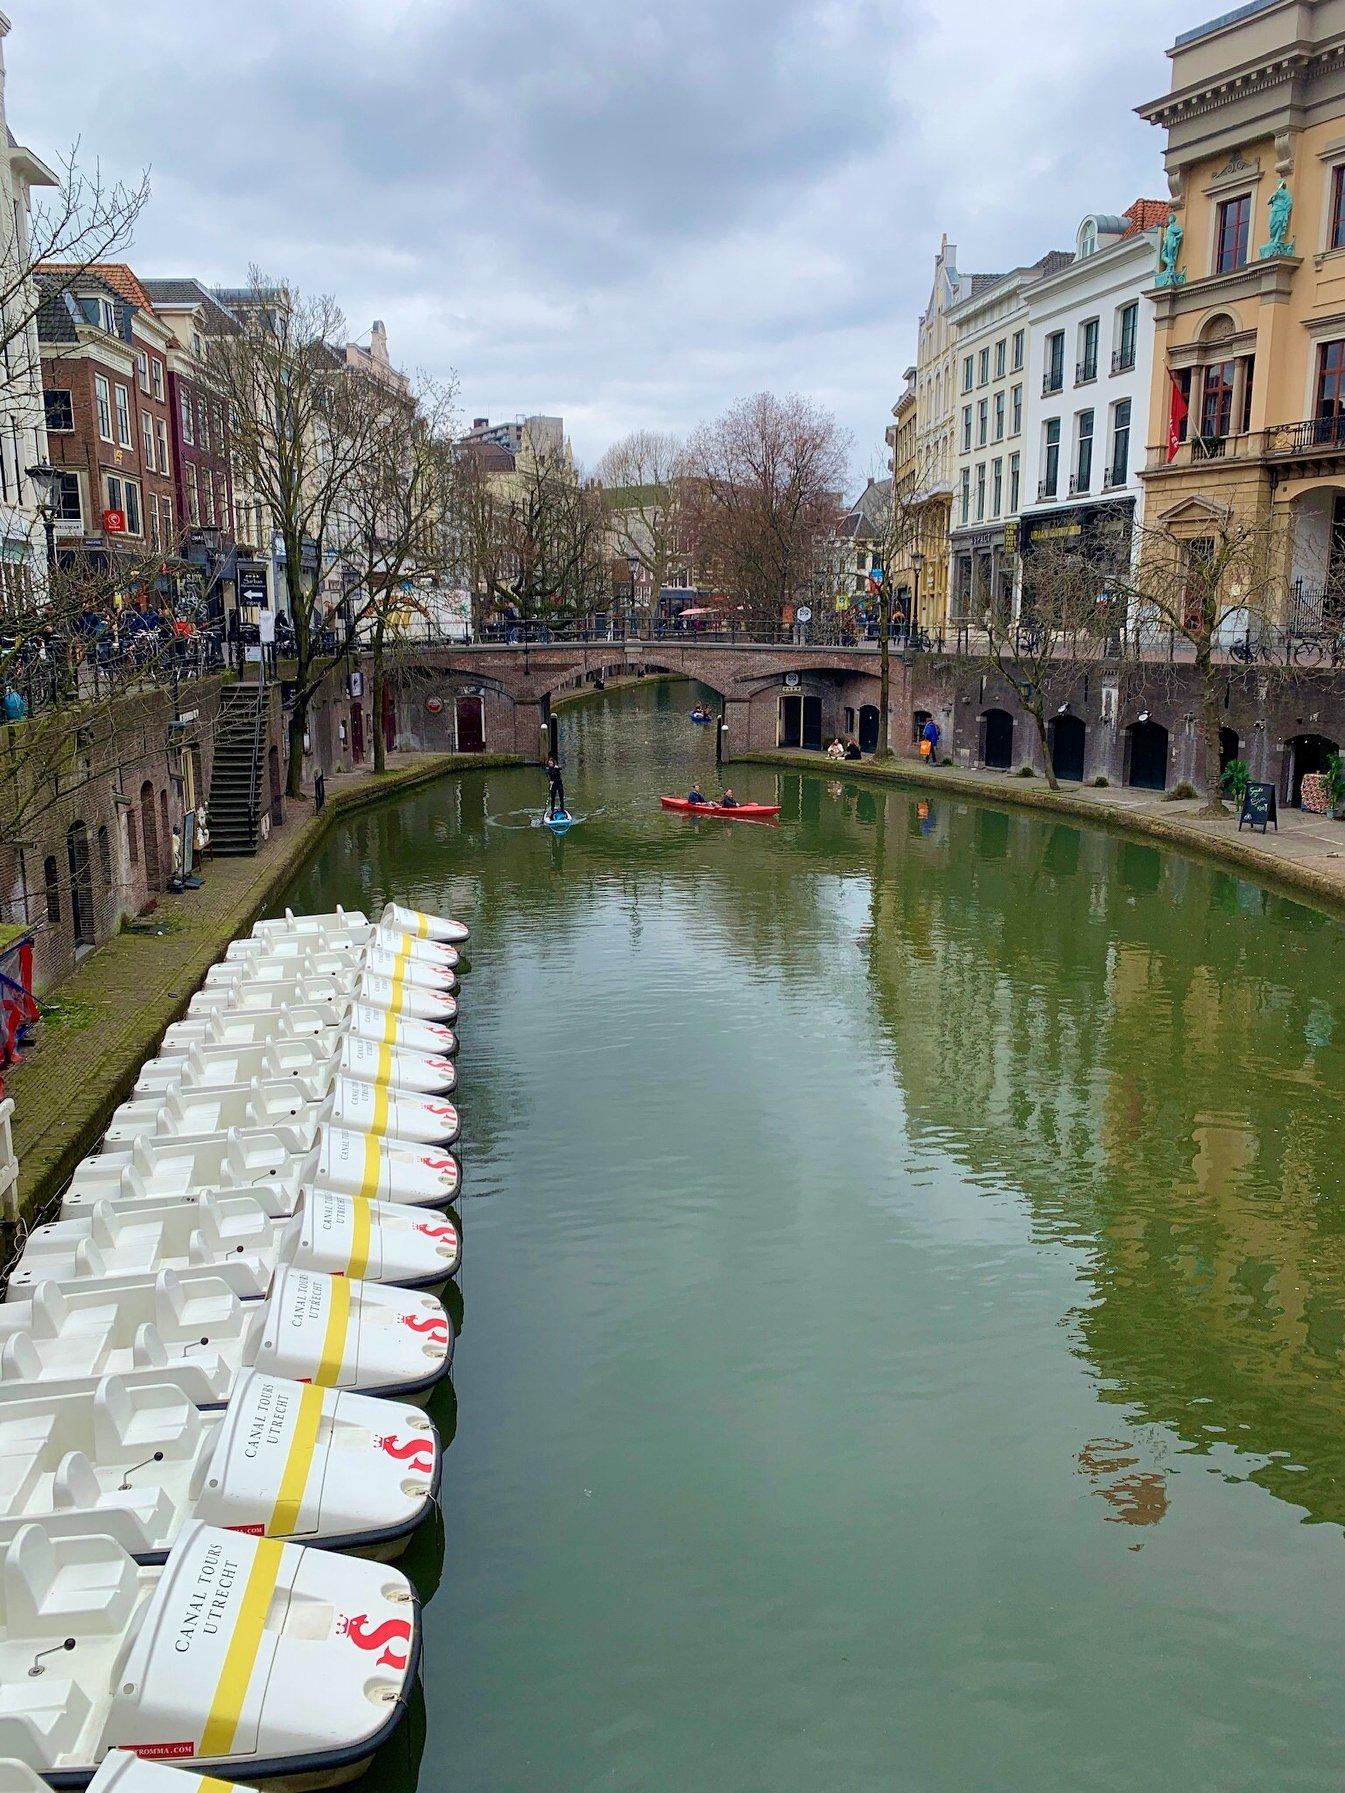 Huur een waterfiets door de grachten van Utrecht (90 min)